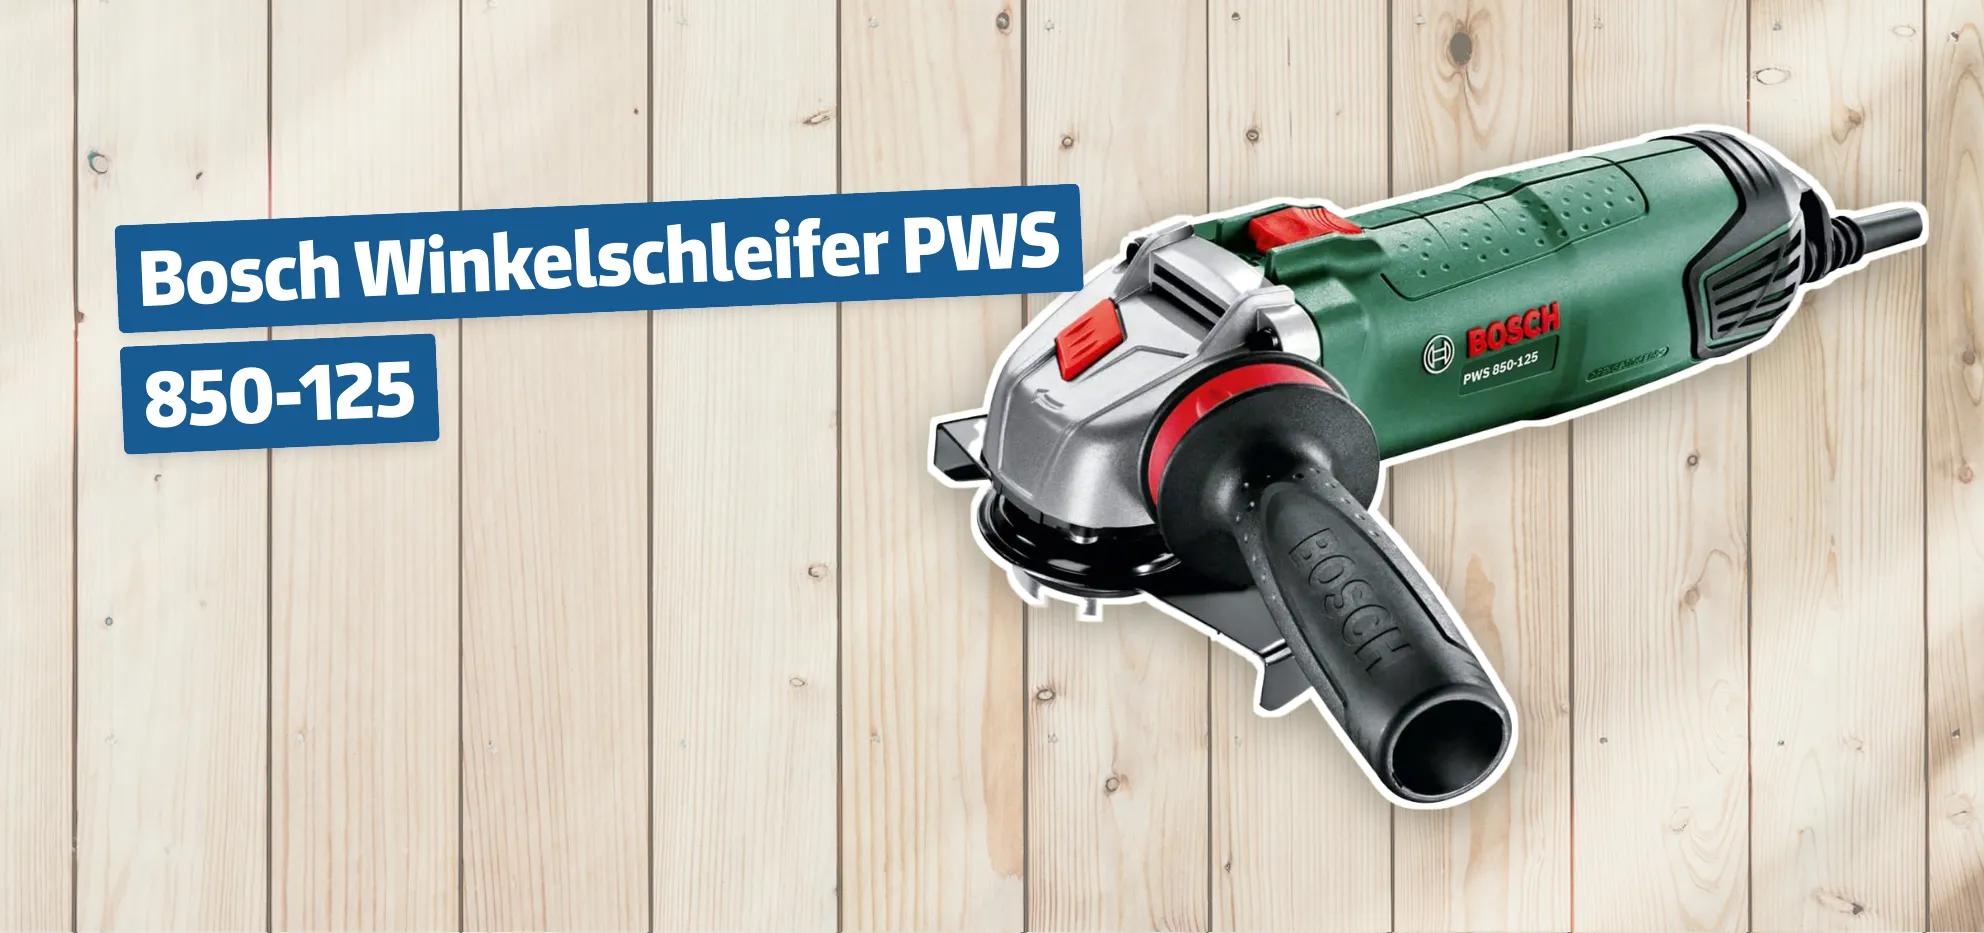 Bosch Winkelschleifer PWS 850-125